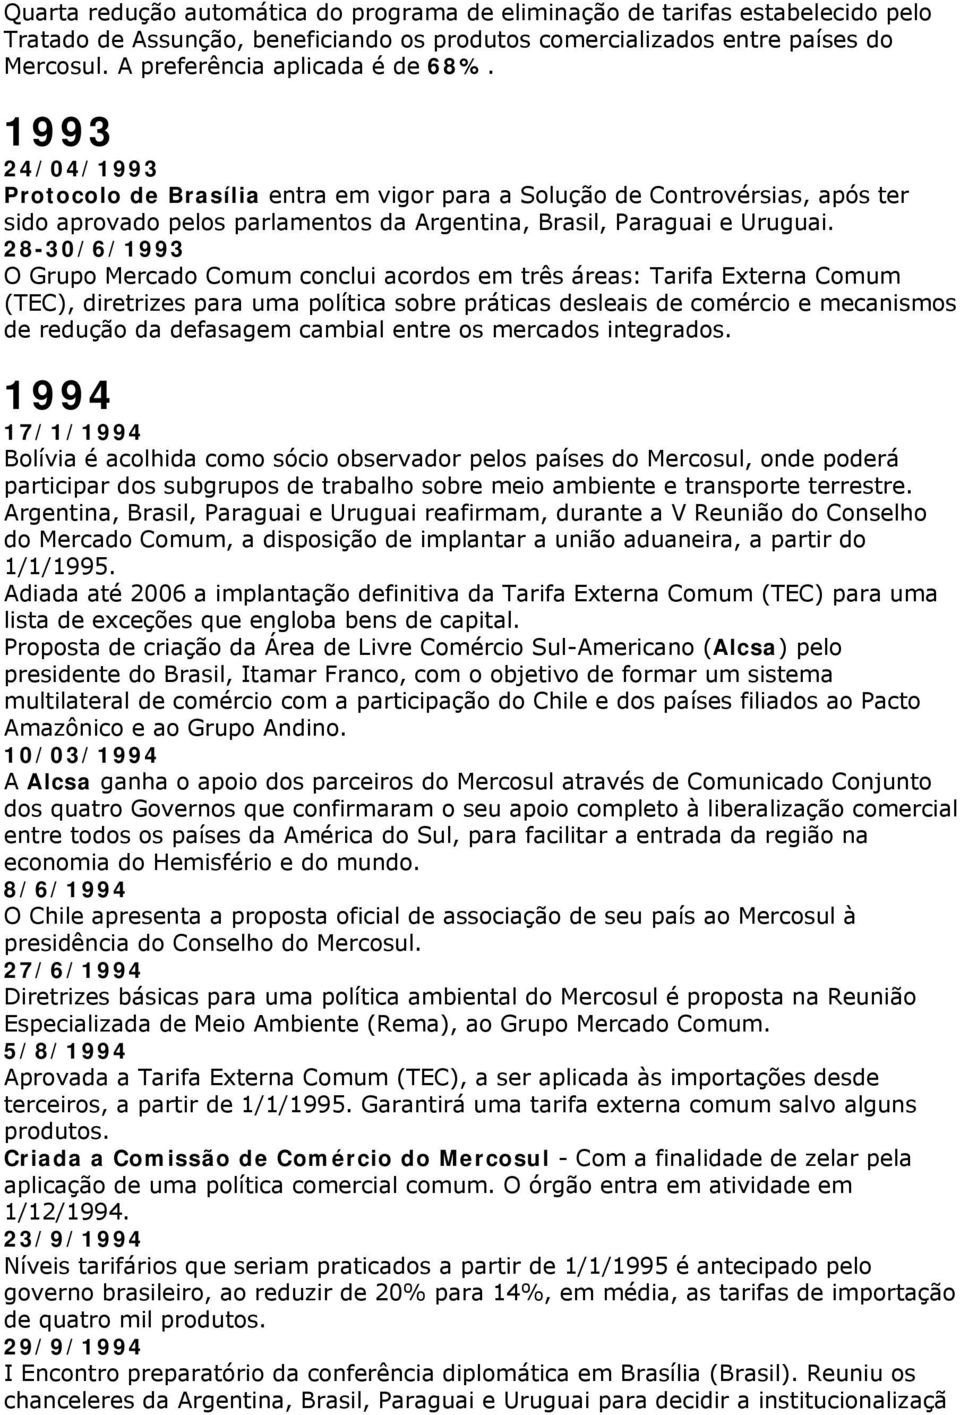 1993 24/04/1993 Protocolo de Brasília entra em vigor para a Solução de Controvérsias, após ter sido aprovado pelos parlamentos da Argentina, Brasil, Paraguai e Uruguai.